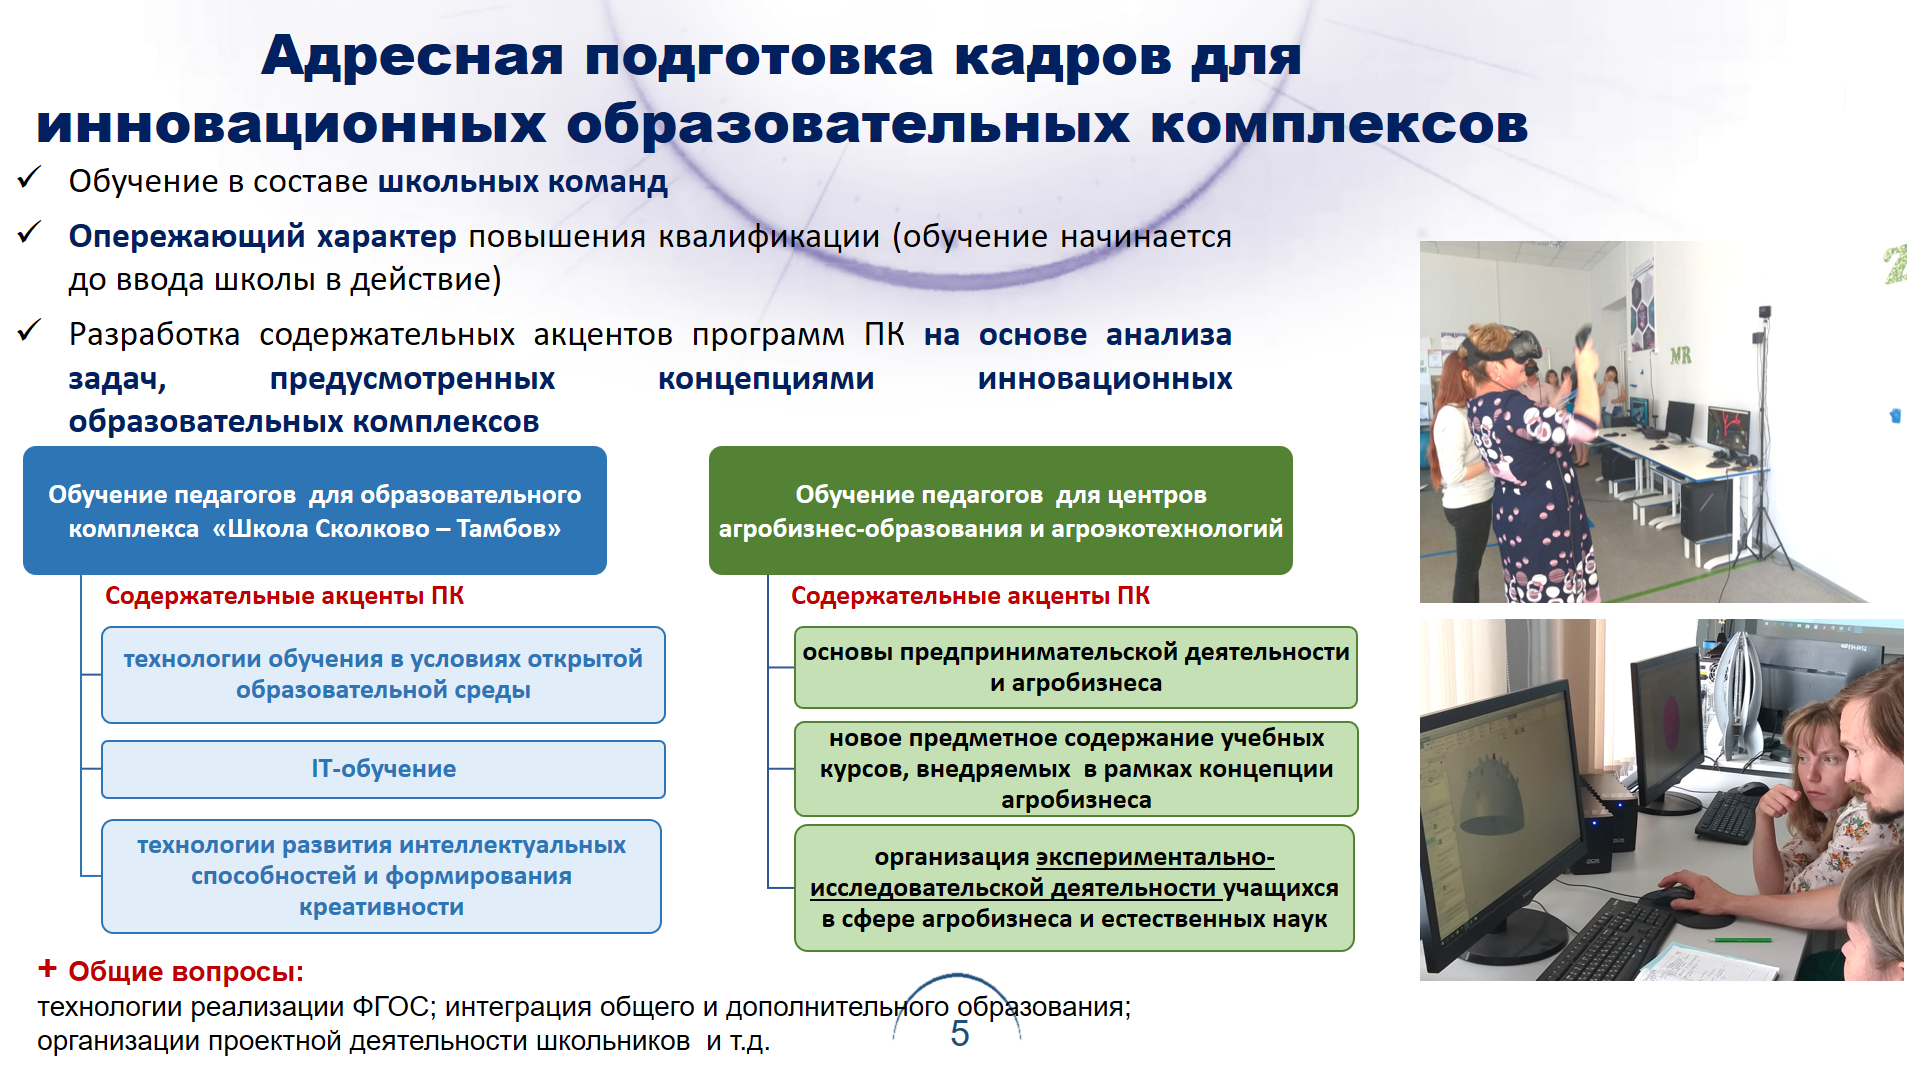 Агробизнес-образование в Тамбовской области: профессиональные компетенции для развития региона